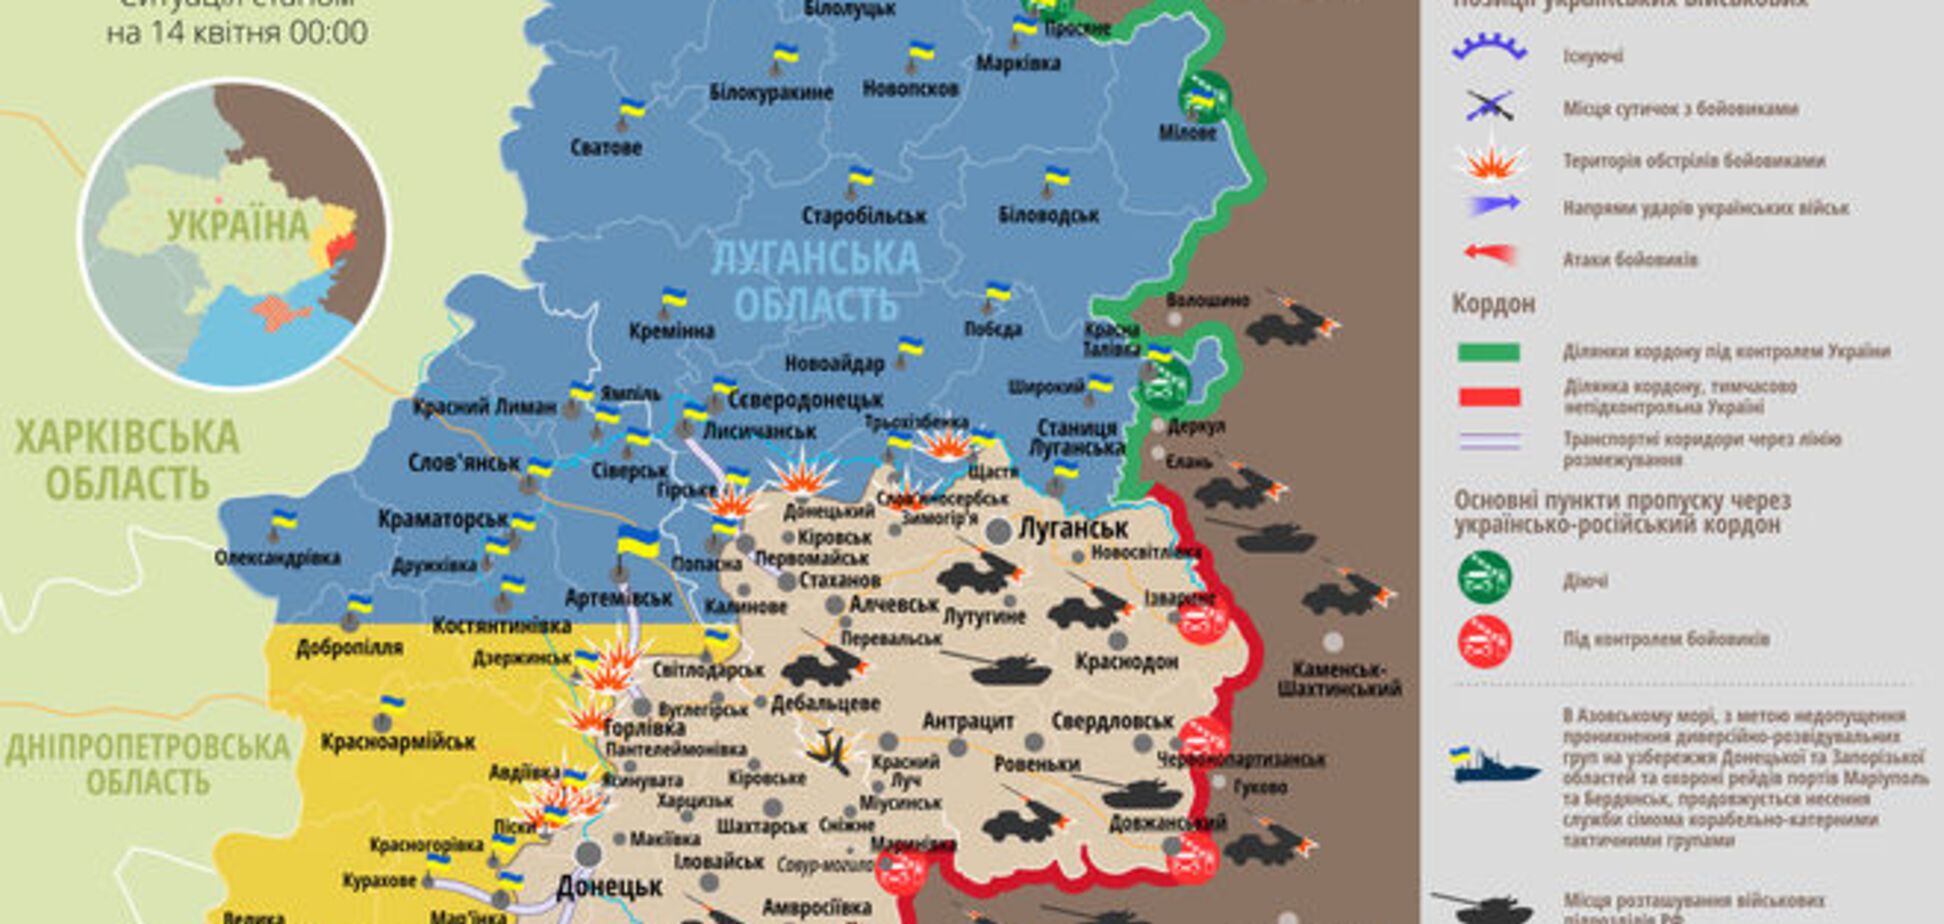 'Перемир'я' на Донбасі під звуки обстрілів: мапа АТО